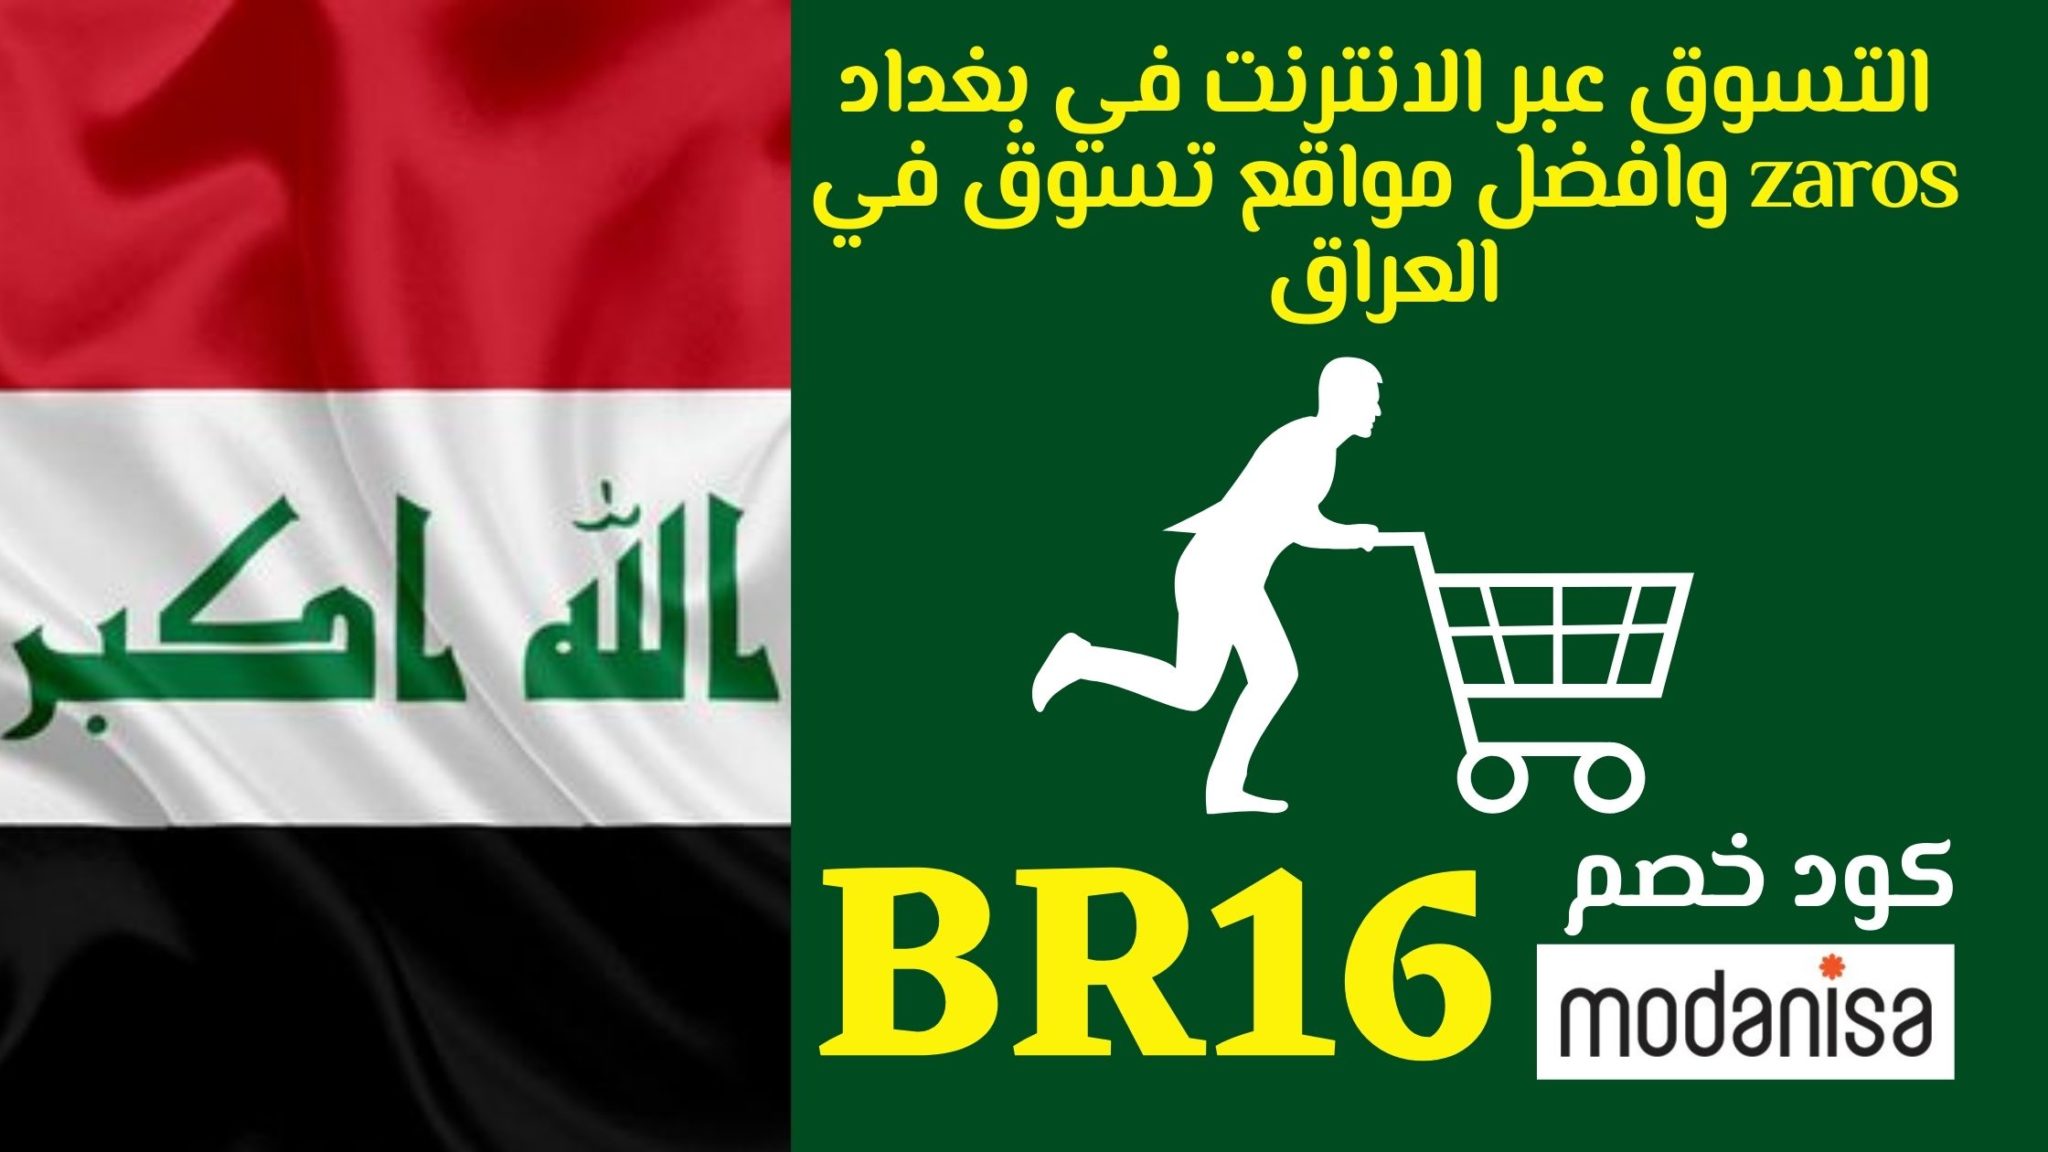 التسوق عبر الانترنت في بغداد zaros